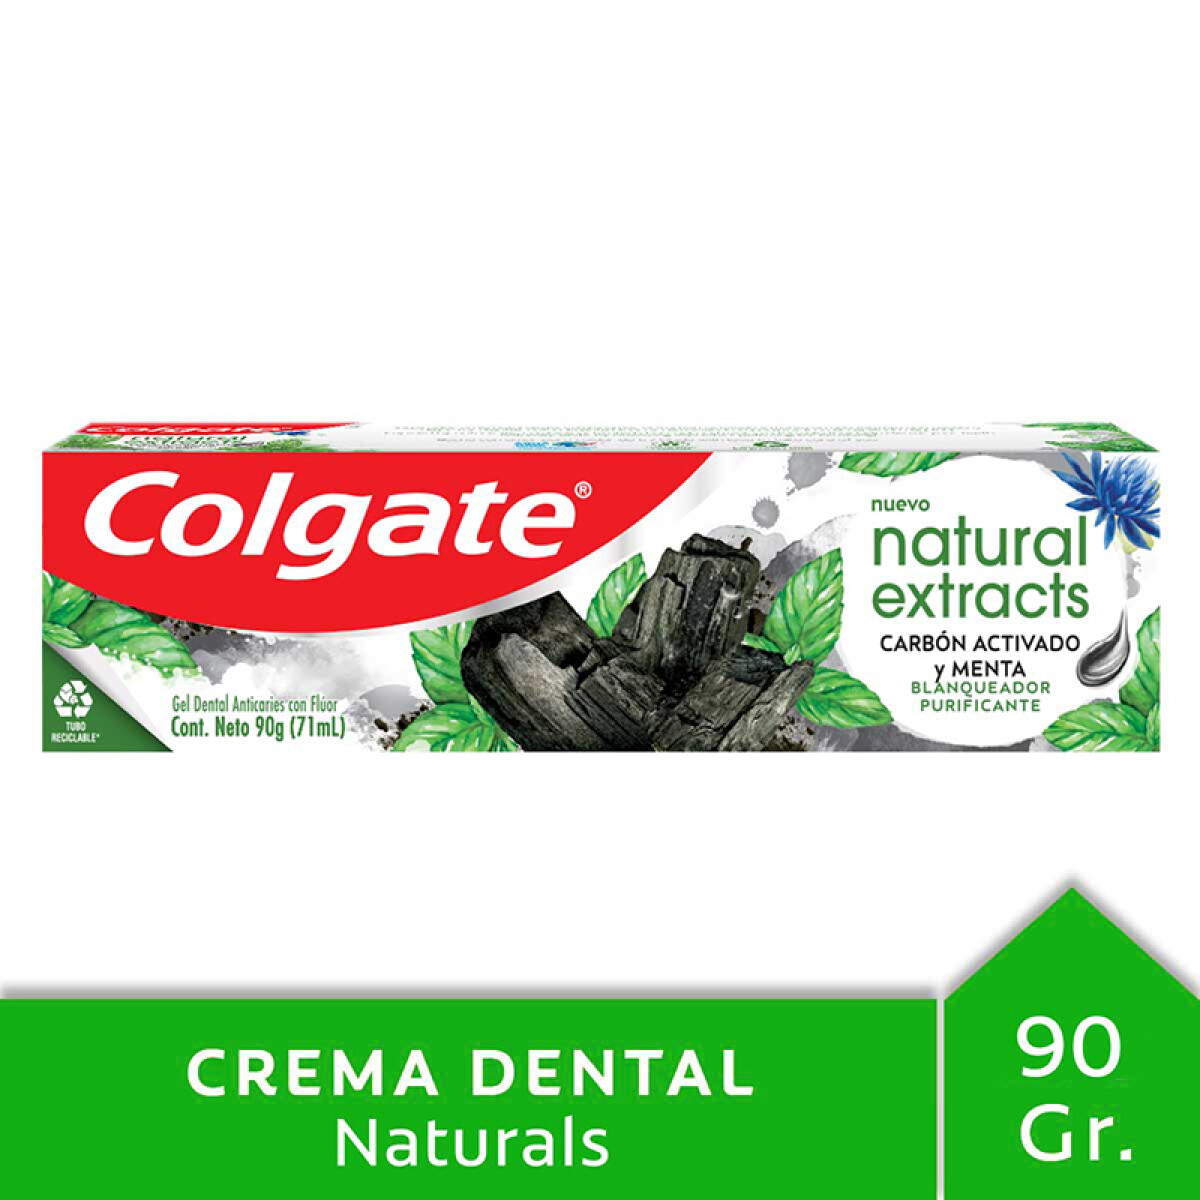 Colgate crema dental natural extracts 90 g - Carbón activado y menta 